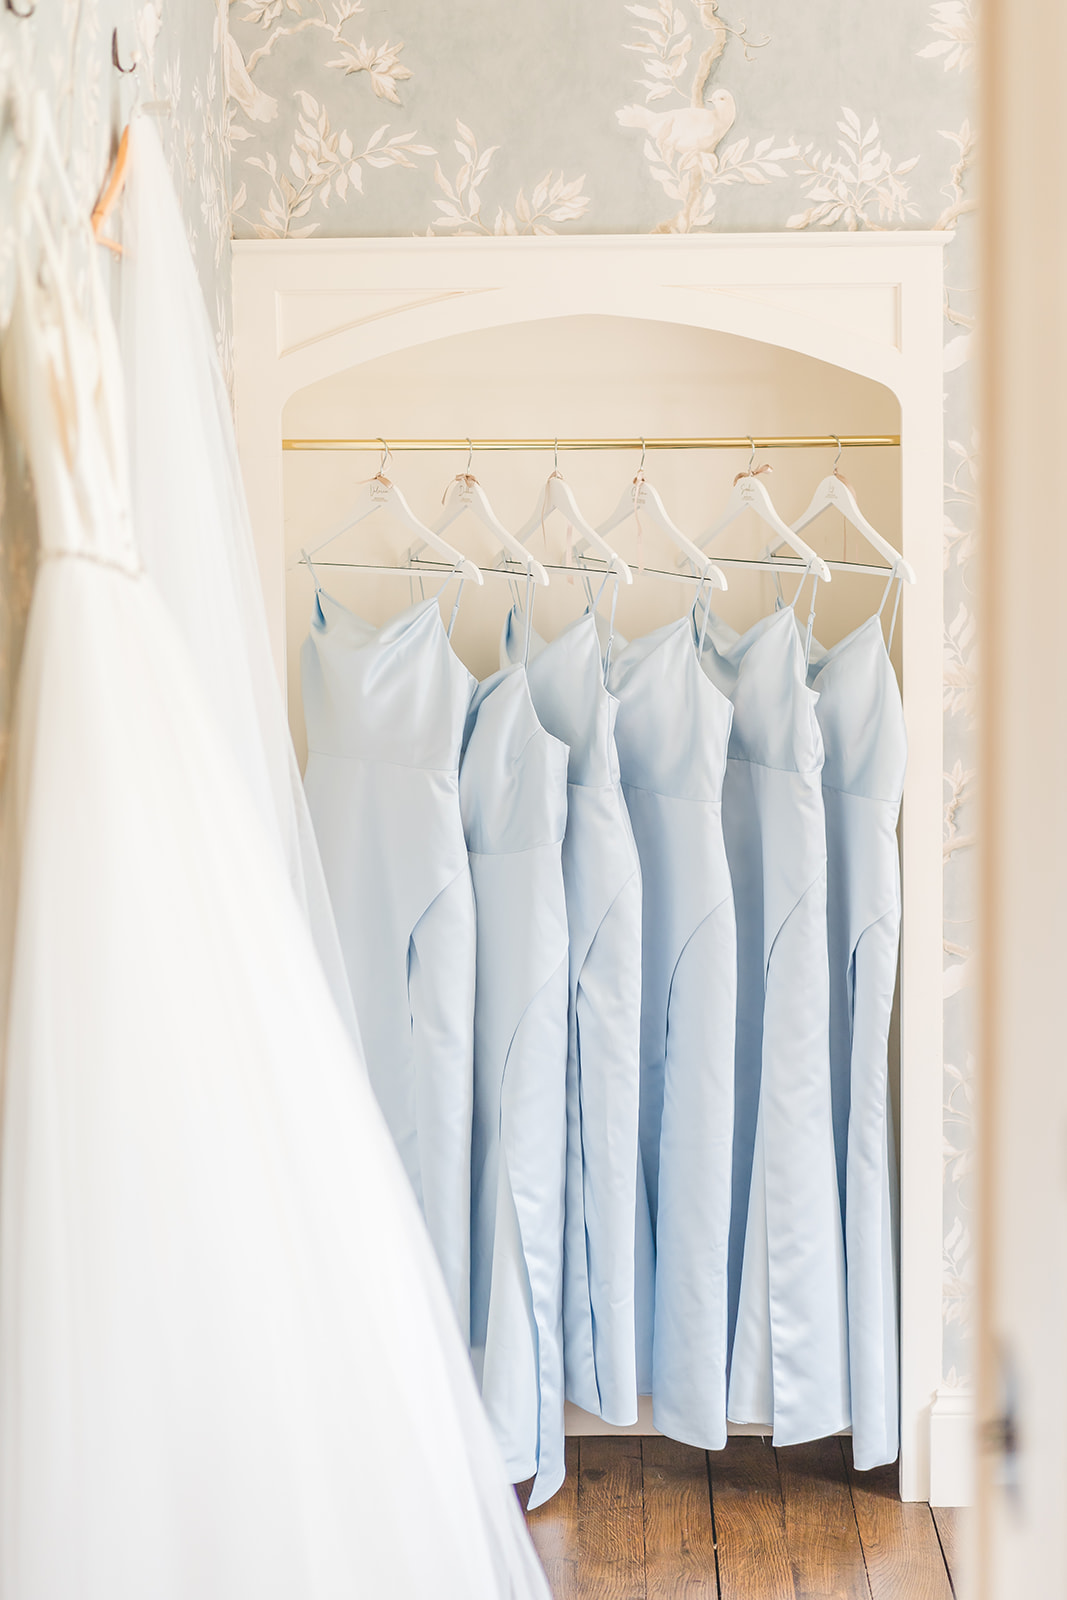 powder blue bridesmaids dresses hang at dorfold hall 